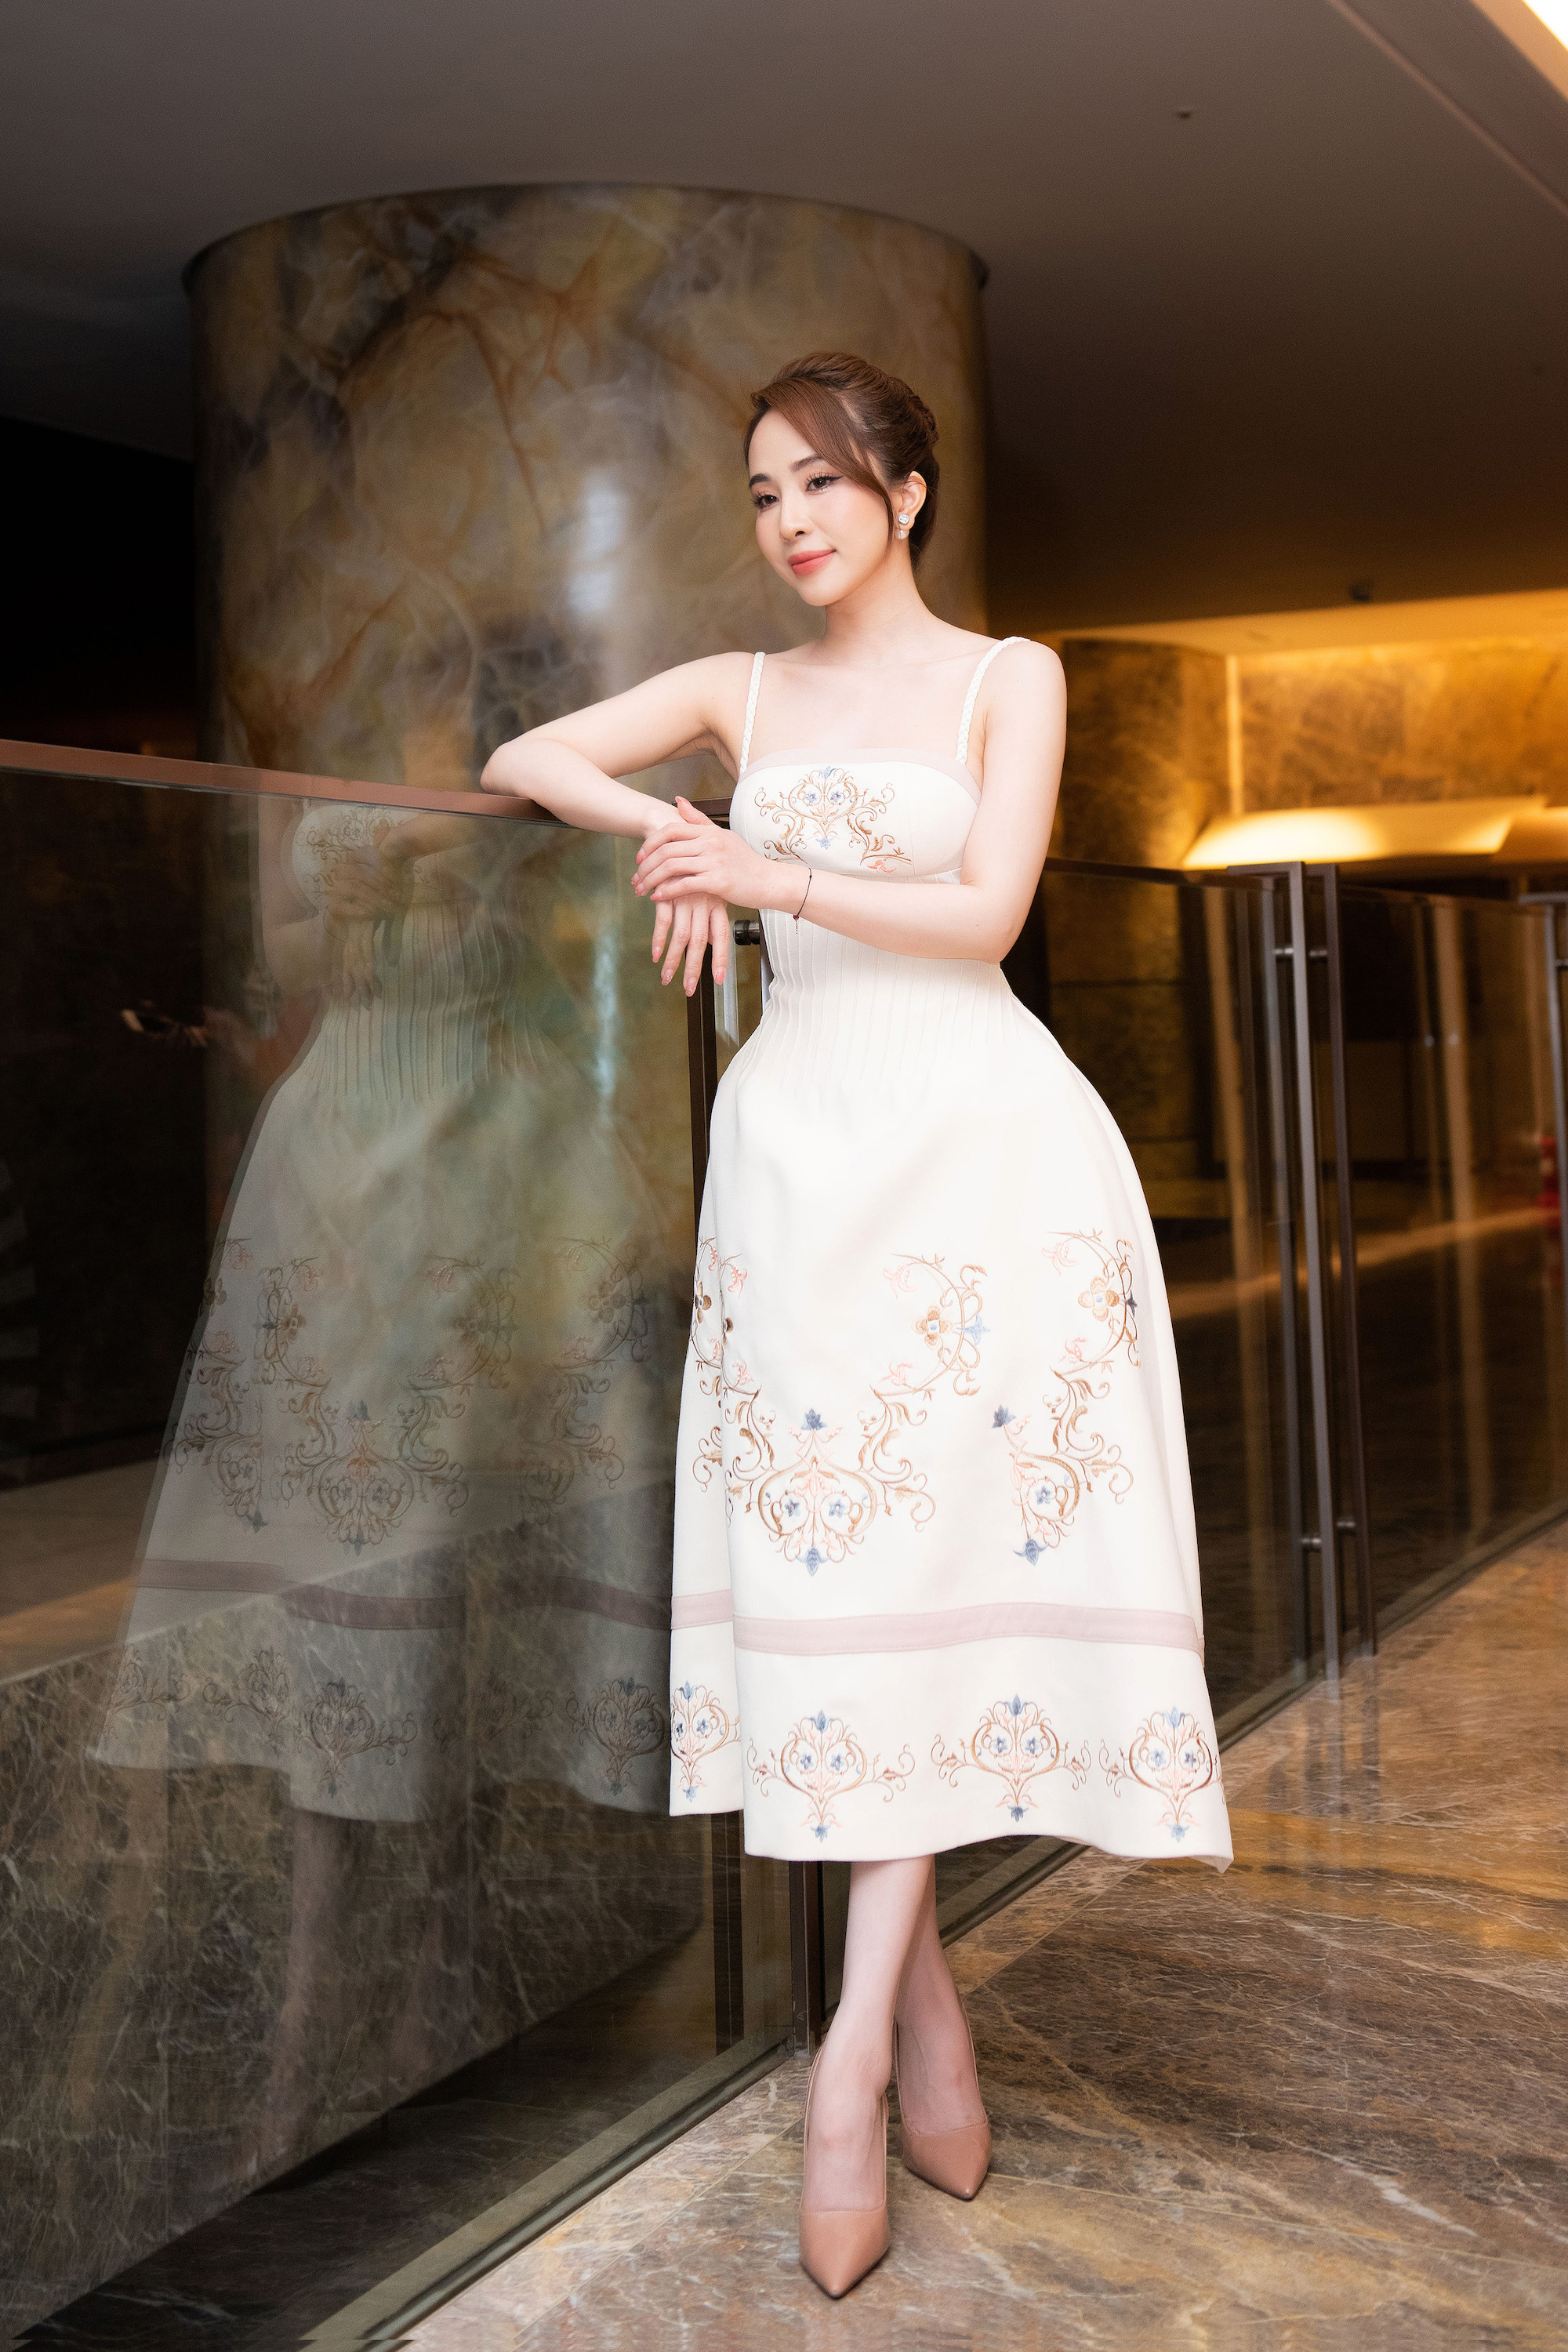 Tin tức giải trí - Quỳnh Nga nổi bật với váy áo khoe lưng trần, da trắng không tì vết trong họp báo phim mới (Hình 5).